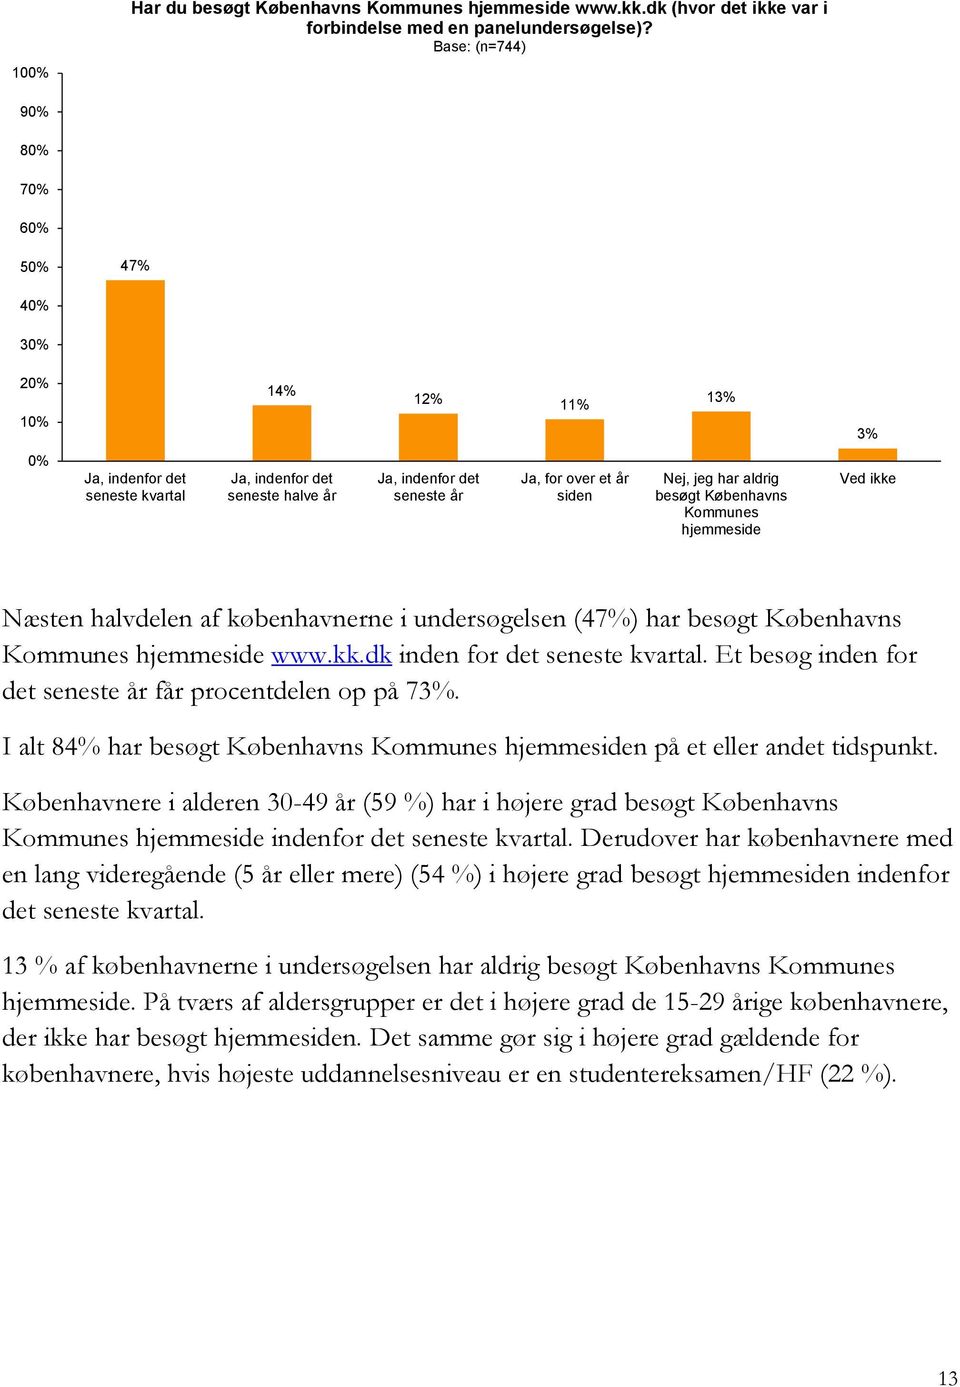 Nej, jeg har aldrig besøgt Københavns Kommunes hjemmeside Ved ikke Næsten halvdelen af københavnerne i undersøgelsen (47%) har besøgt Københavns Kommunes hjemmeside www.kk.dk inden for det seneste kvartal.